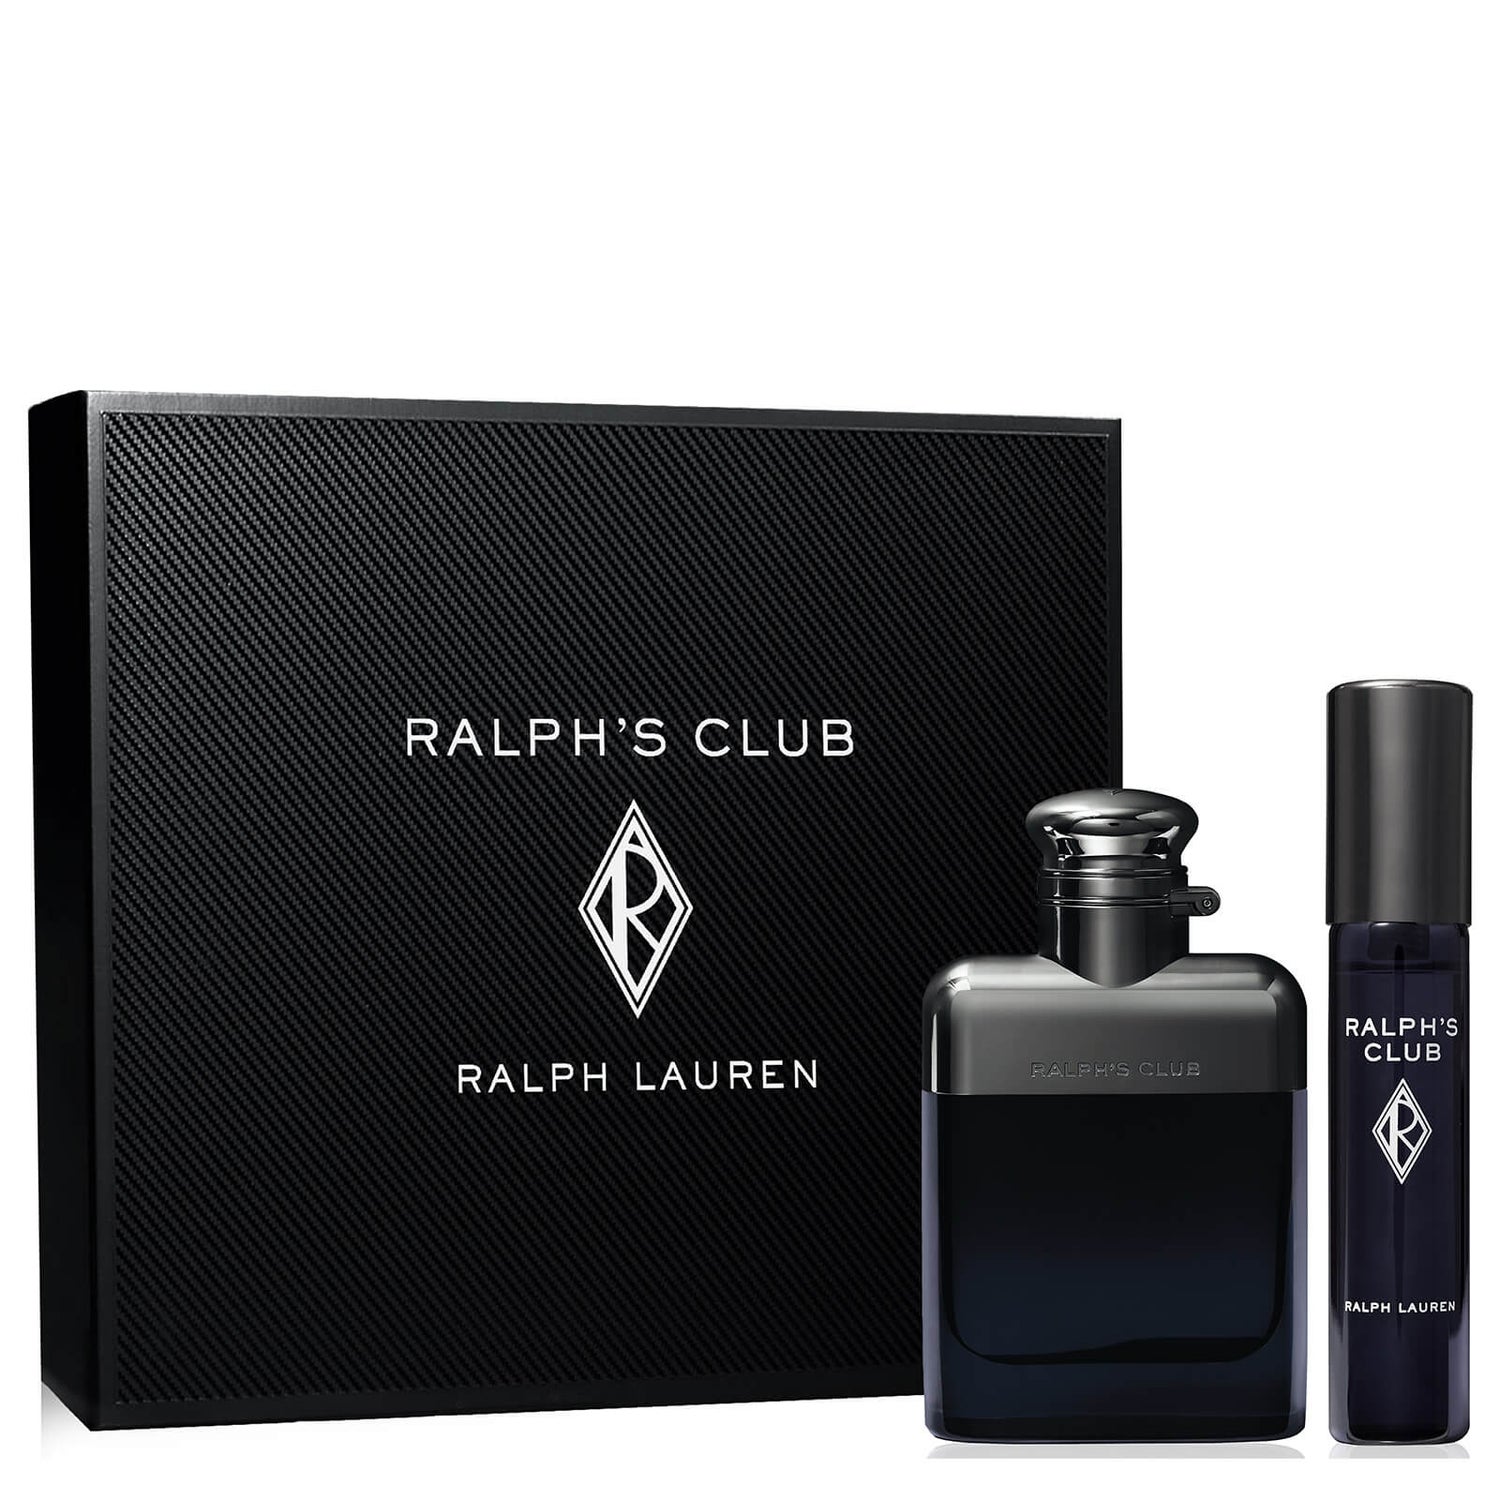 Set de regalo Ralph Lauren Ralph's Club Eau de Toilette 50ml (Valorado en 64,00€)